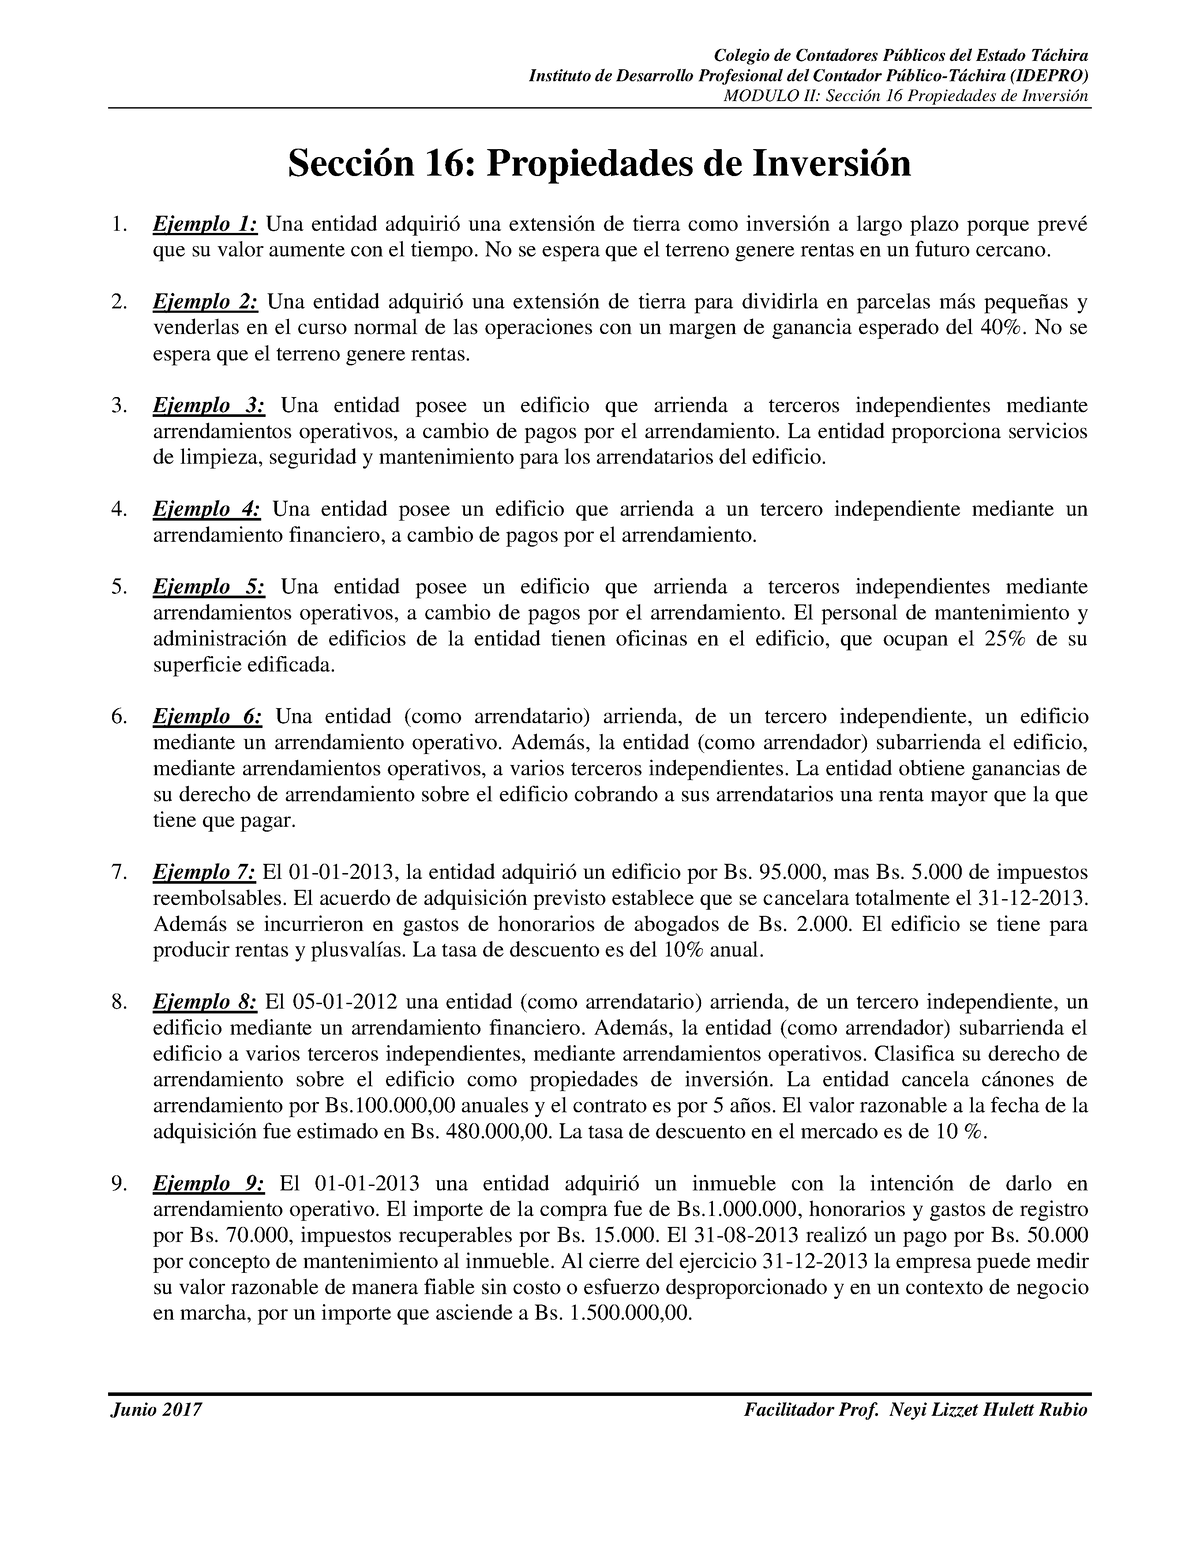 Ejercicios Practicos Apuntes 2 Instituto De Desarrollo Profesional Del Contador Público 2623